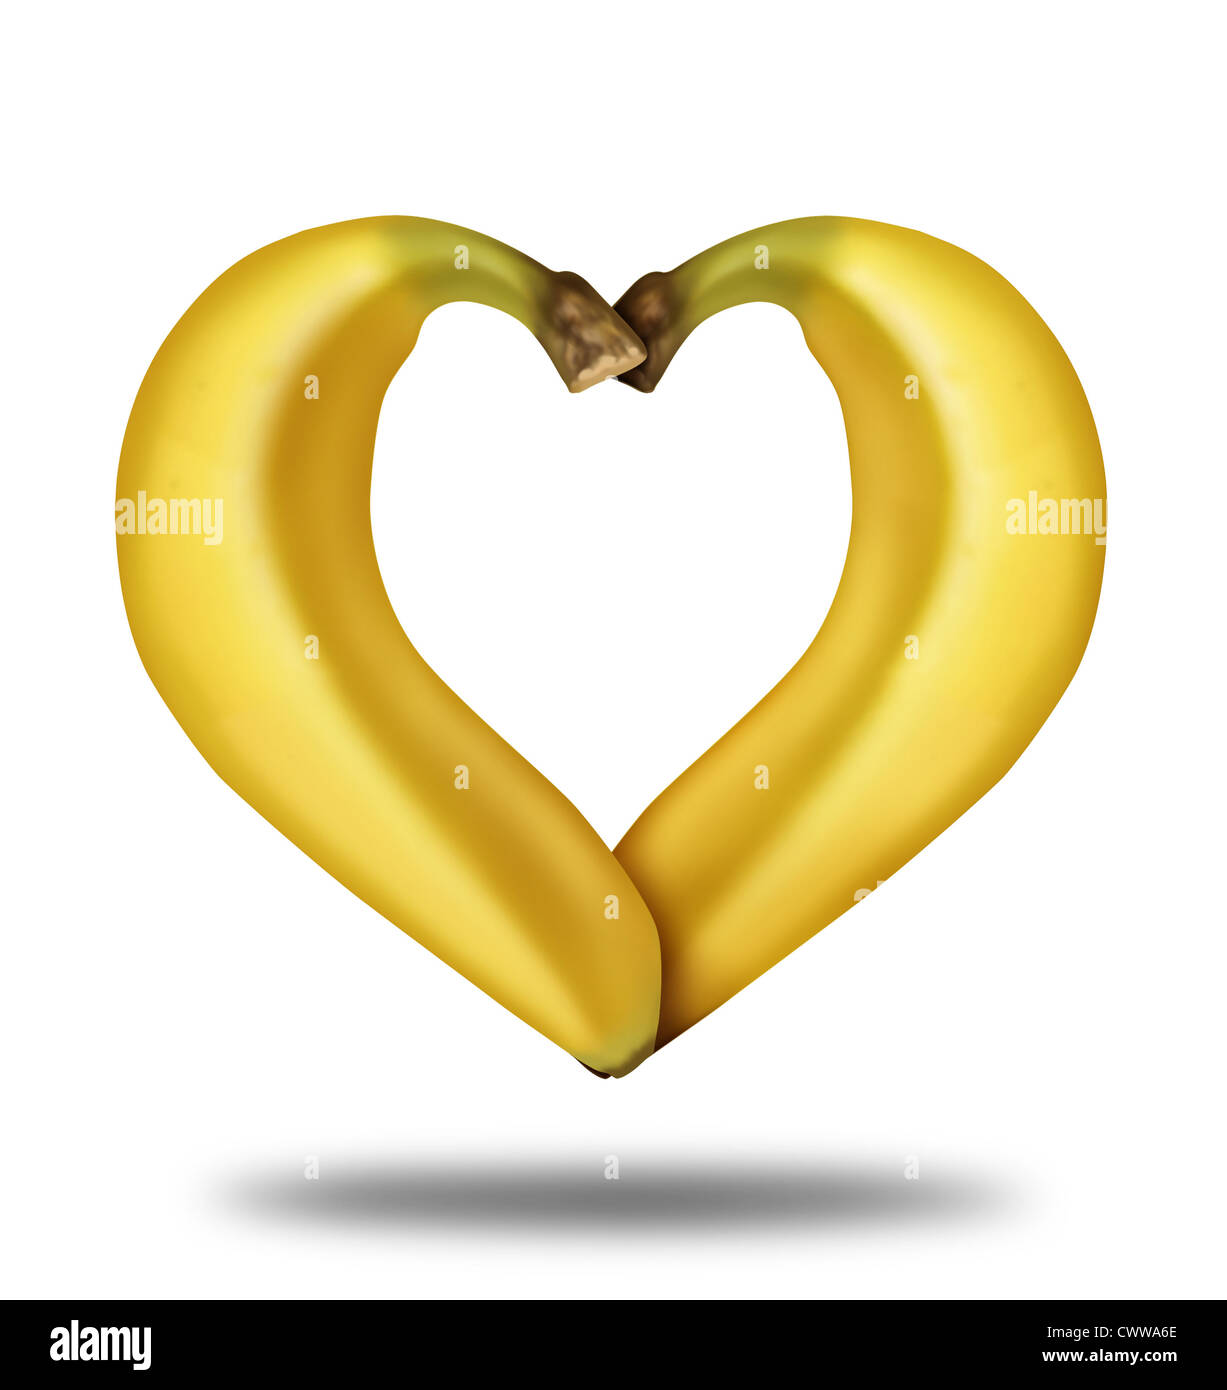 Gesunde Lebensweise Symbol vertreten durch Bananen in der Form eines Herzens Gesundheitskonzept des Essens gut mit Früchten zeigen eine Stockfoto